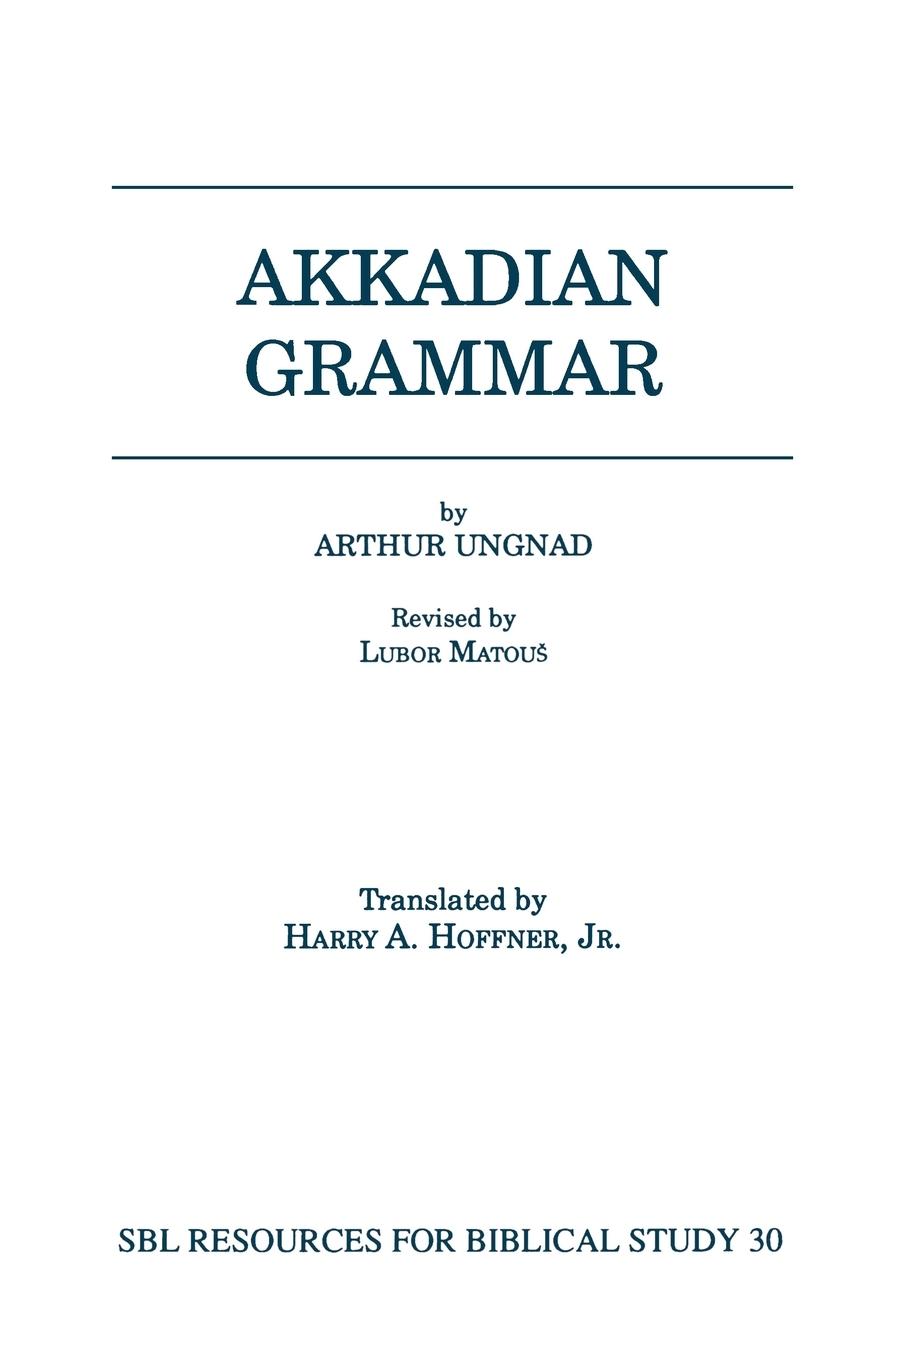 Akkadian Grammar - Ungnad, Arthur